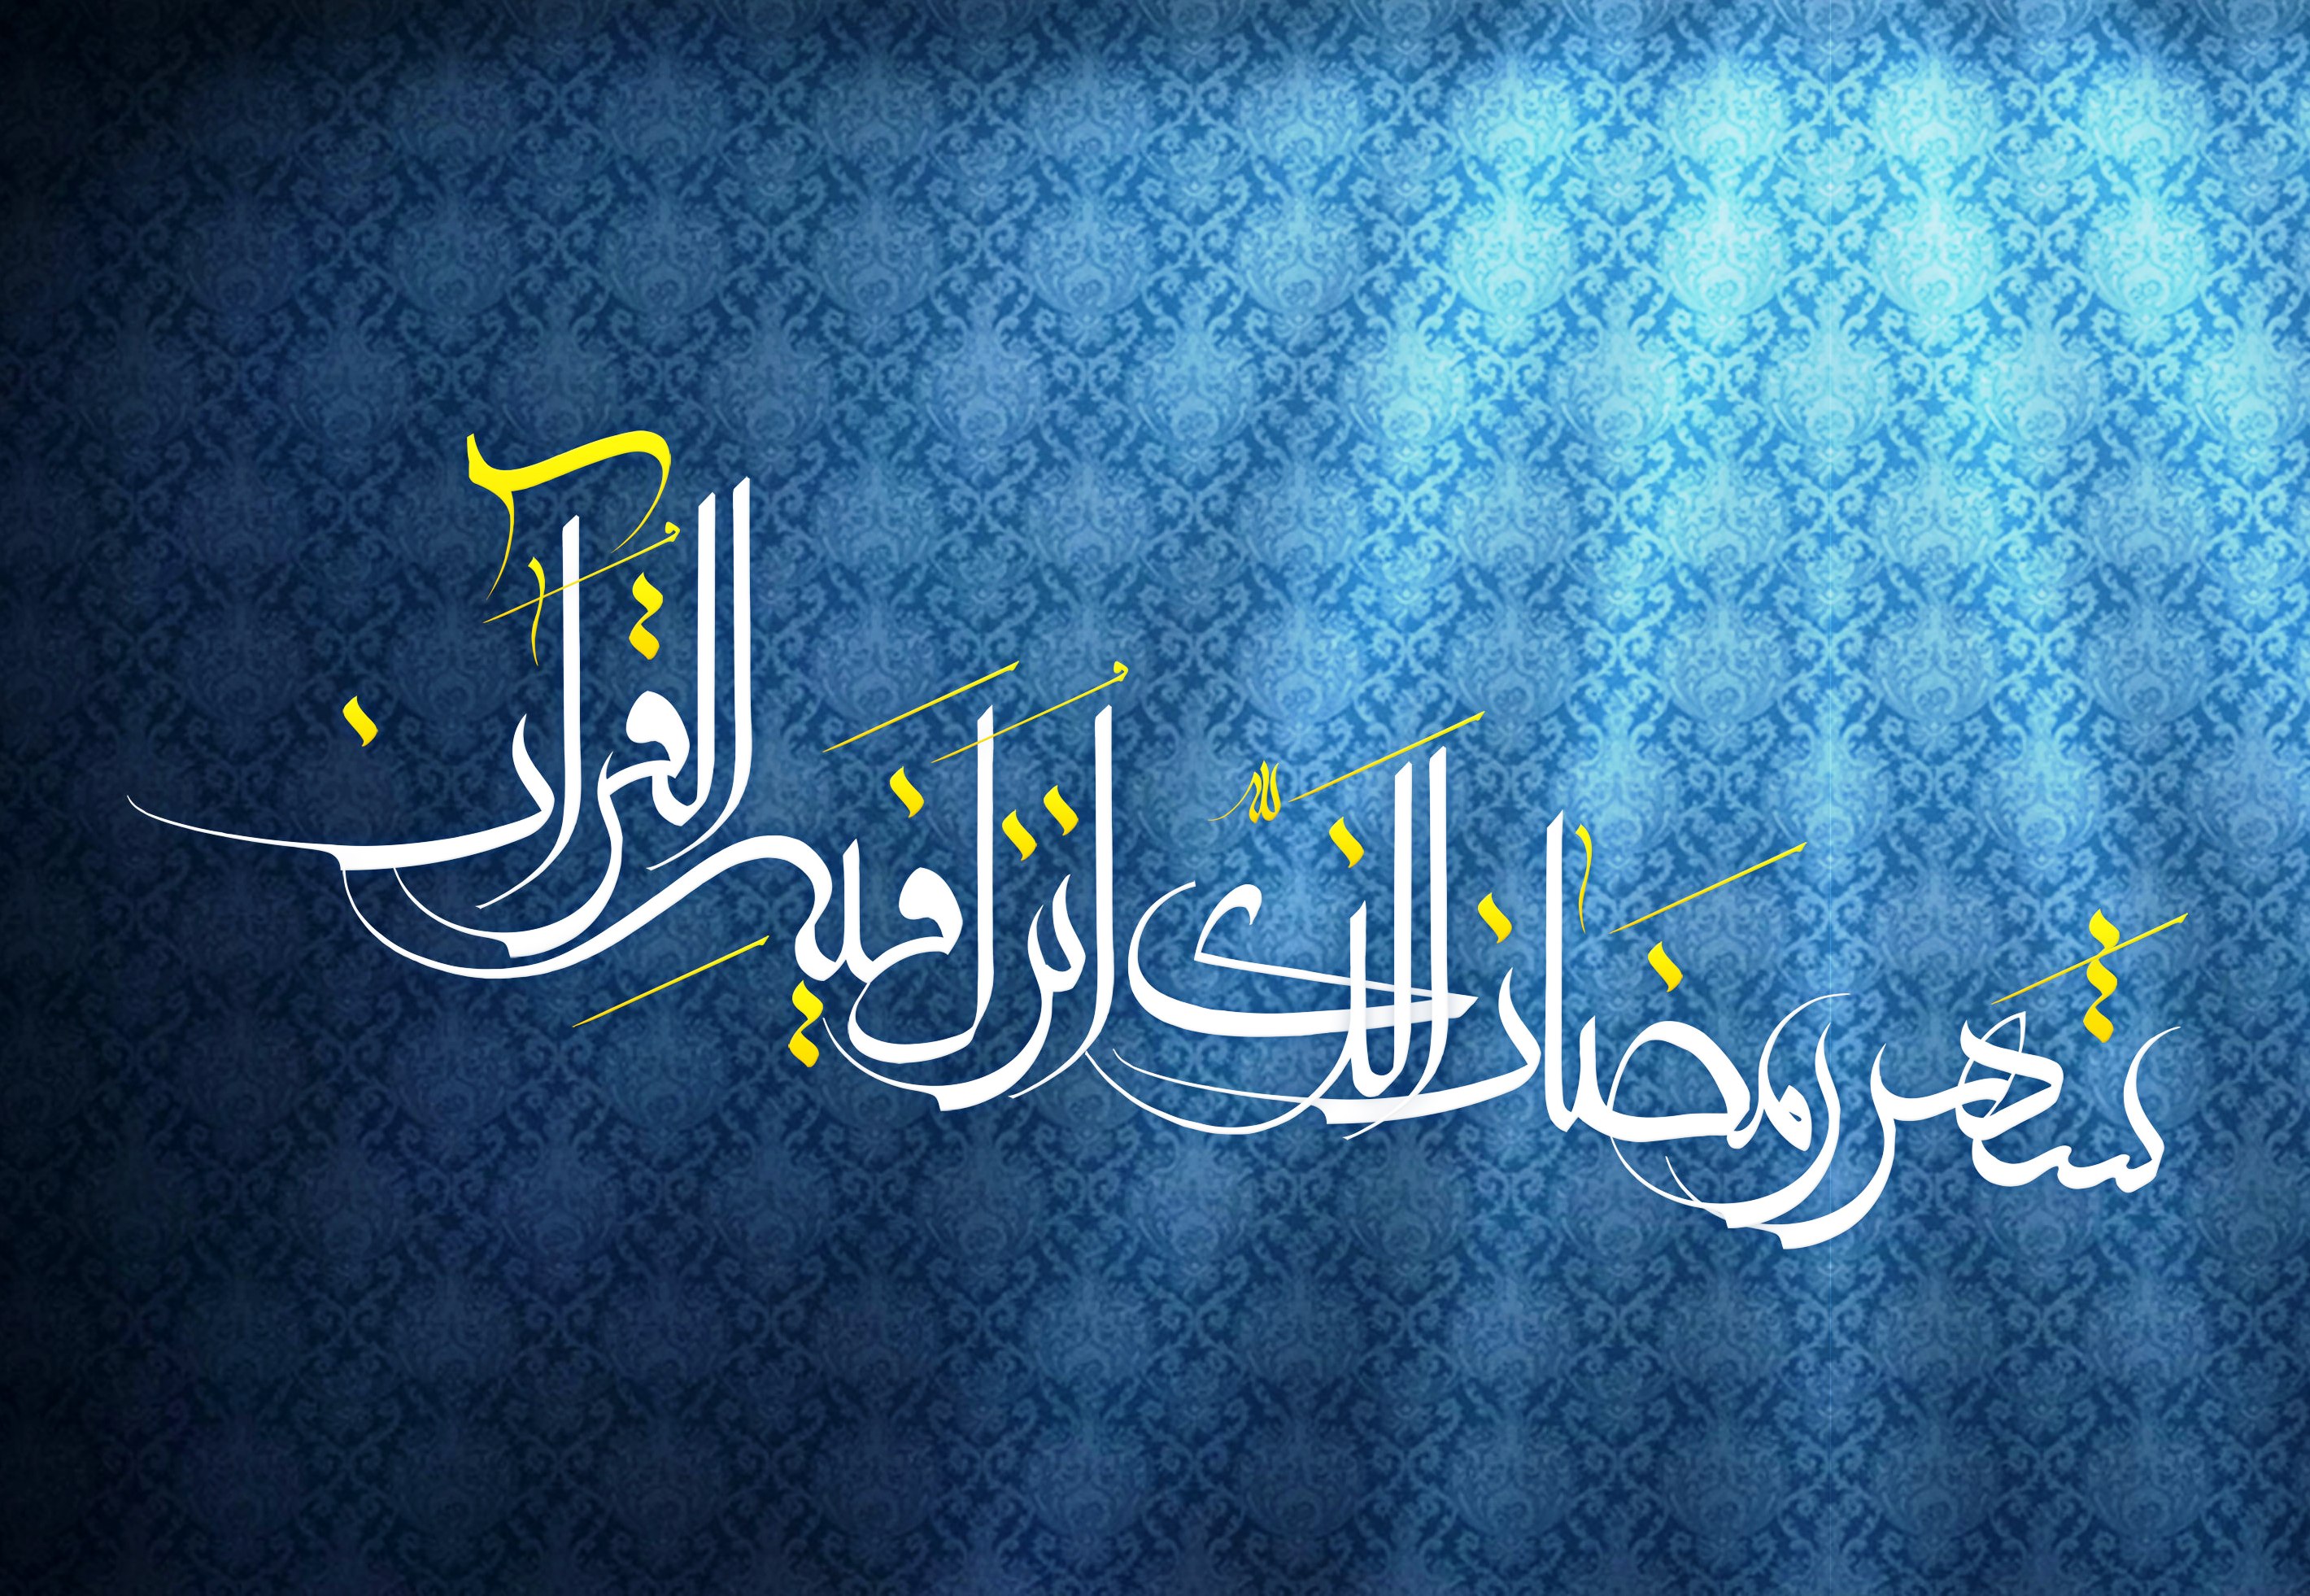 دعای روز ششم ماه رمضان + صوت